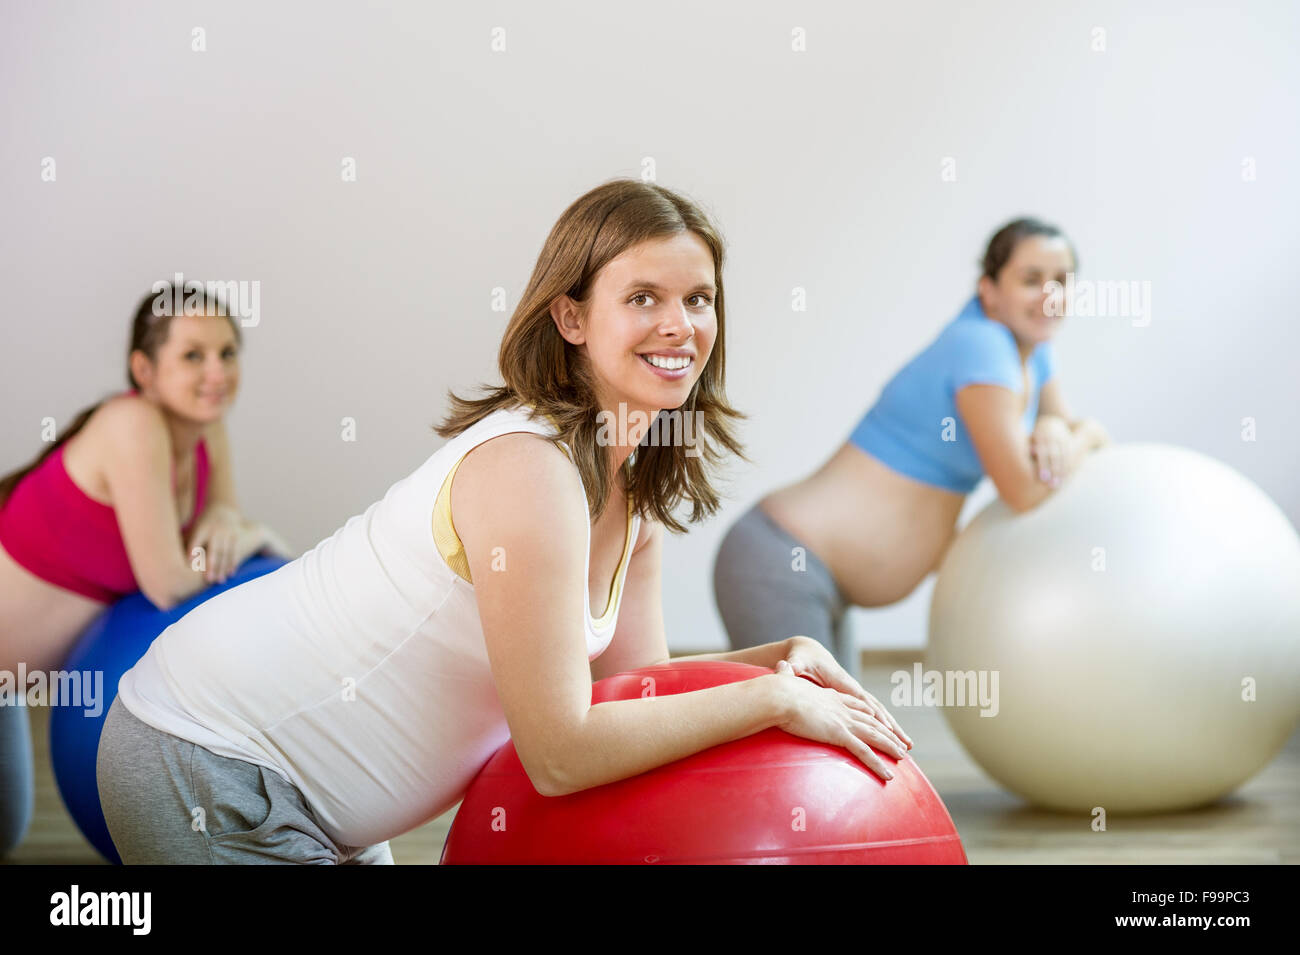 Junge schwangere Frauen tun Entspannung Übung mit einem Fitnessball Stockfoto